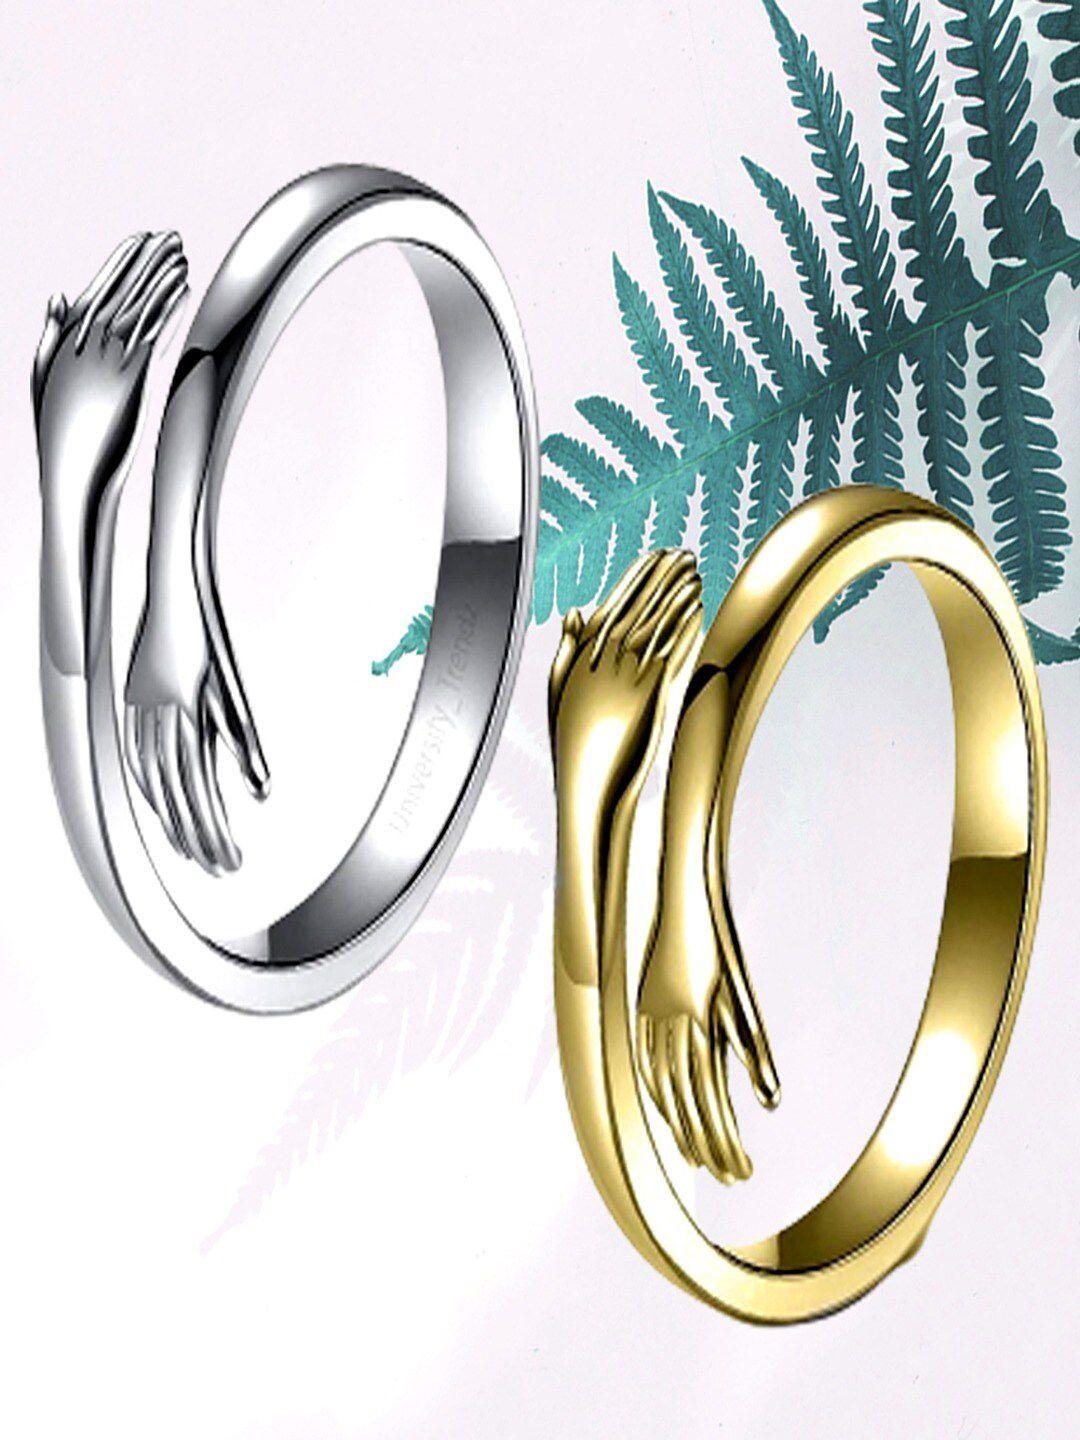 university trendz set of 2 silver & gold-plated hug adjustable finger rings